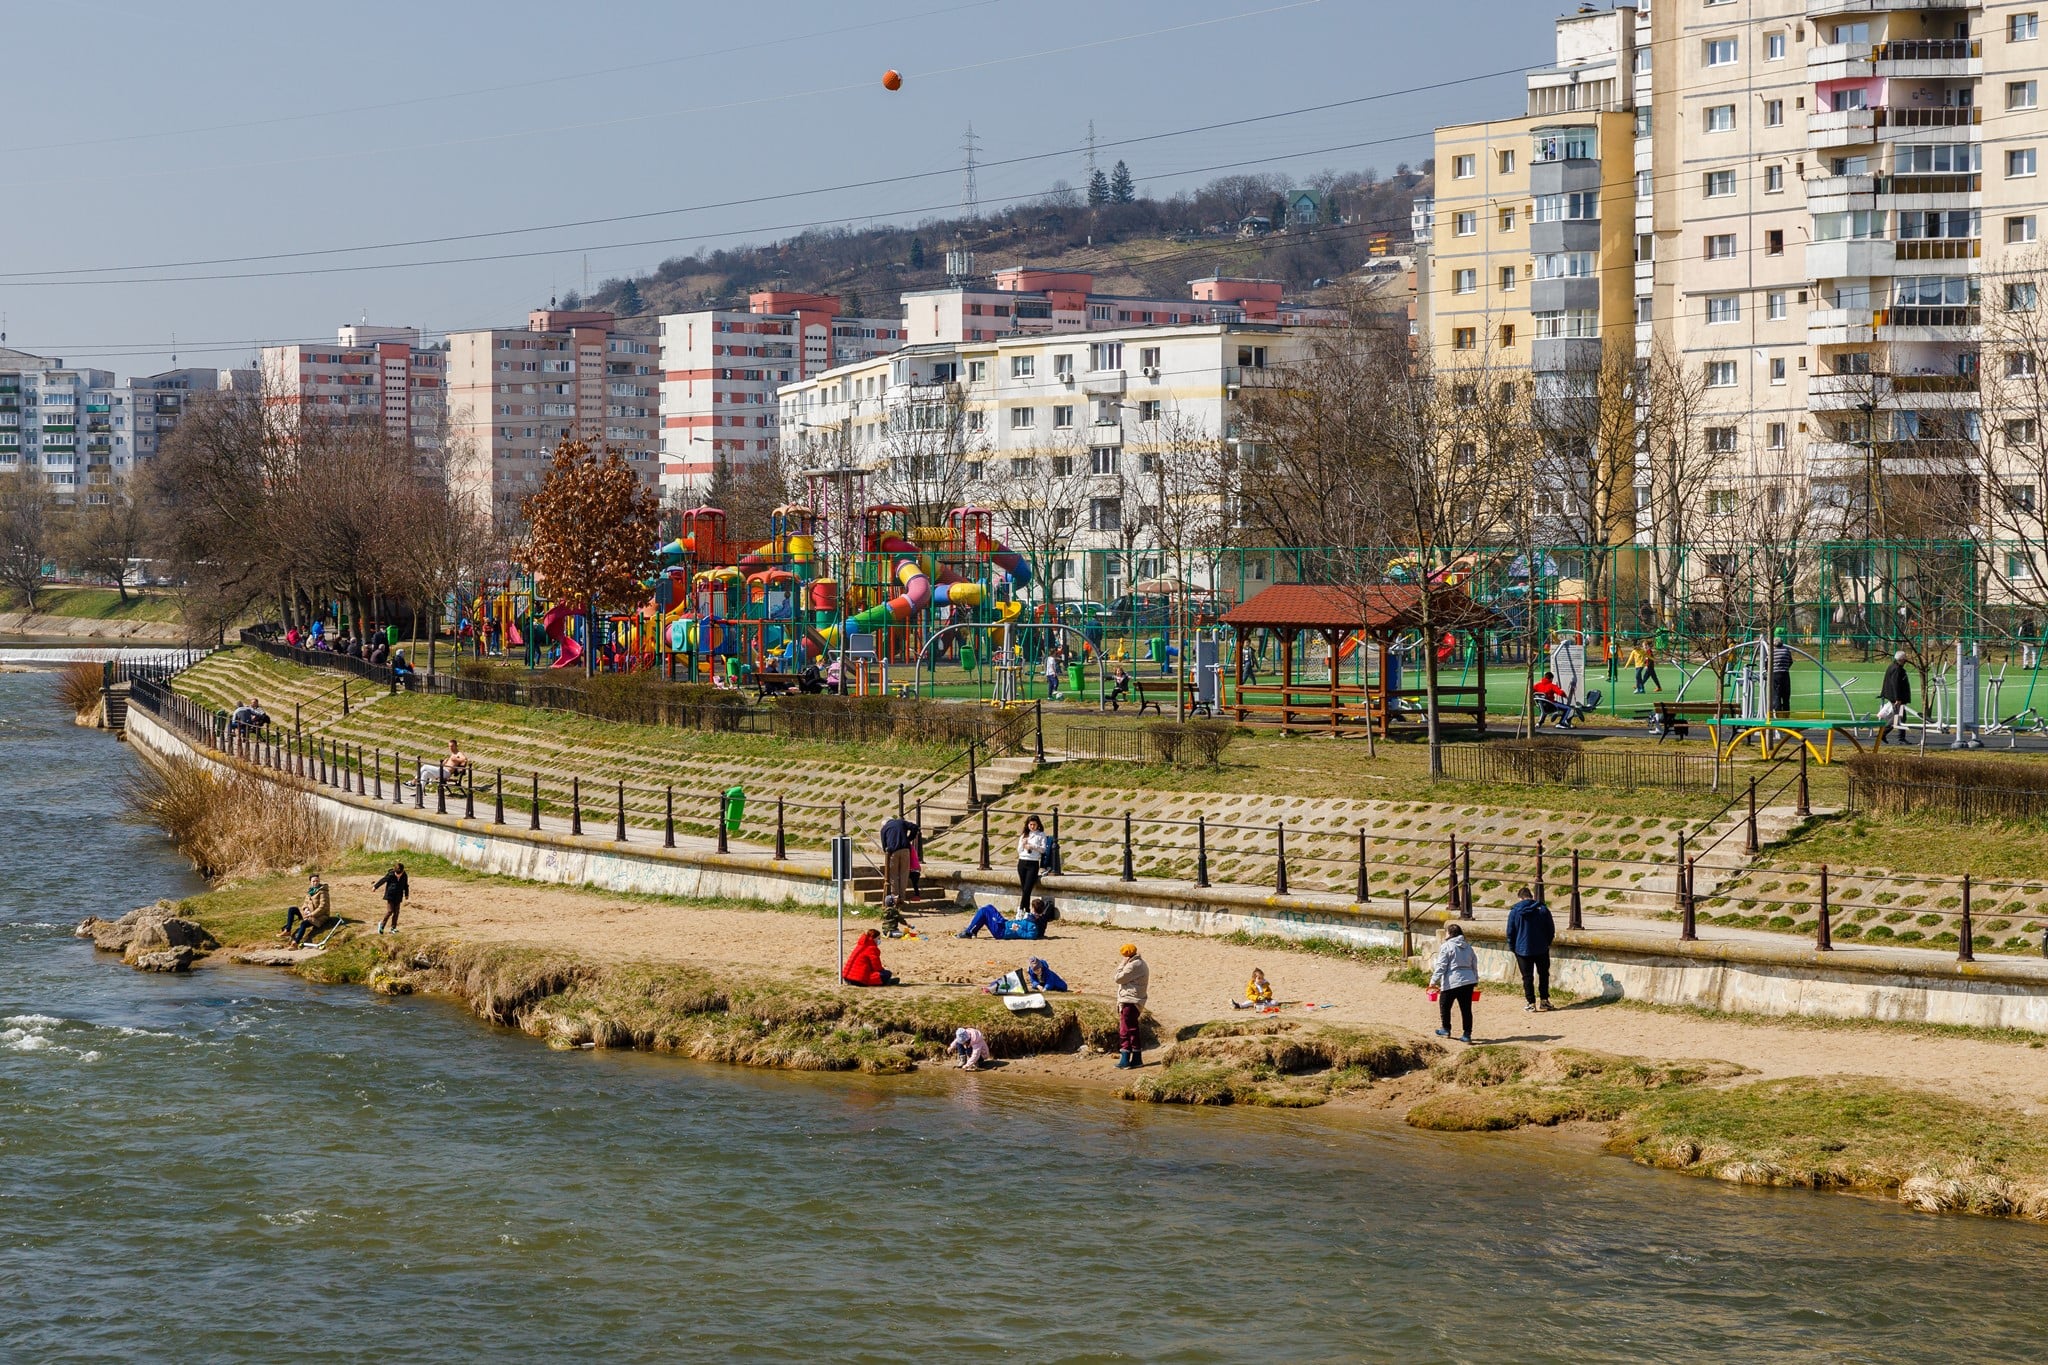 Ce poți face în primul weekend fără restricții, la Cluj-Napoca și în împrejurimi?